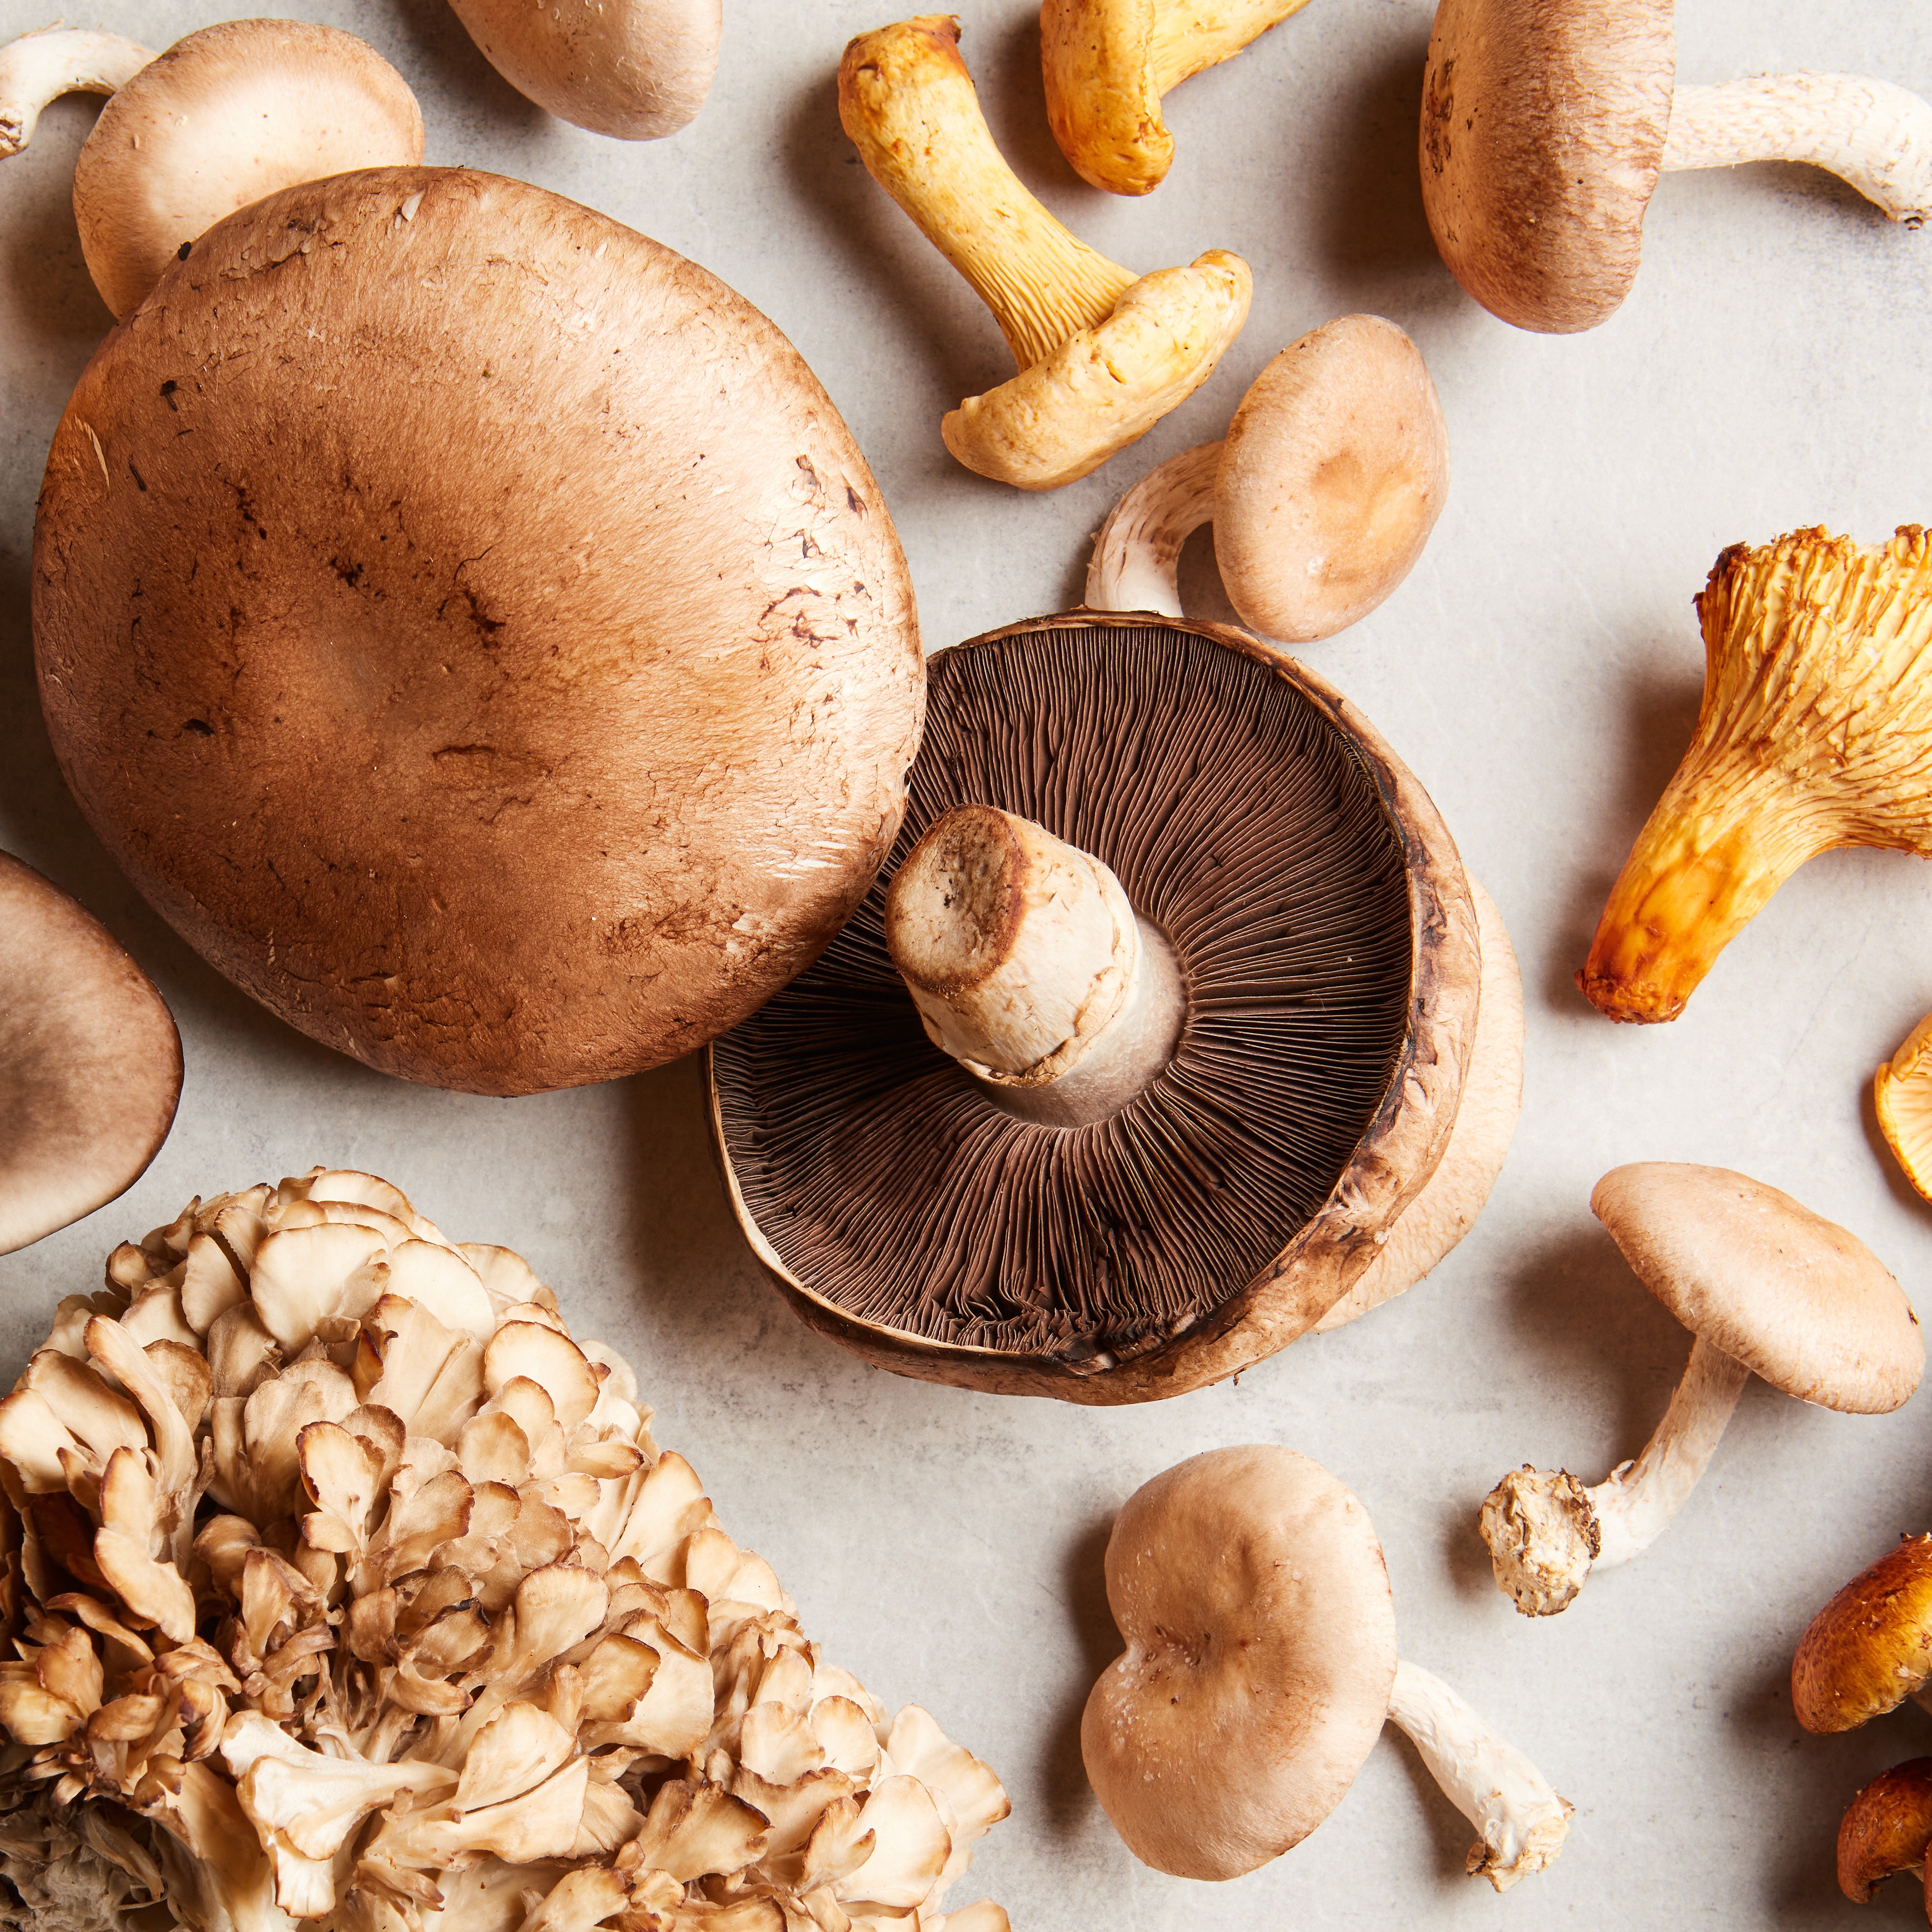 How to Store Mushrooms to Keep Those Fungi Fresh